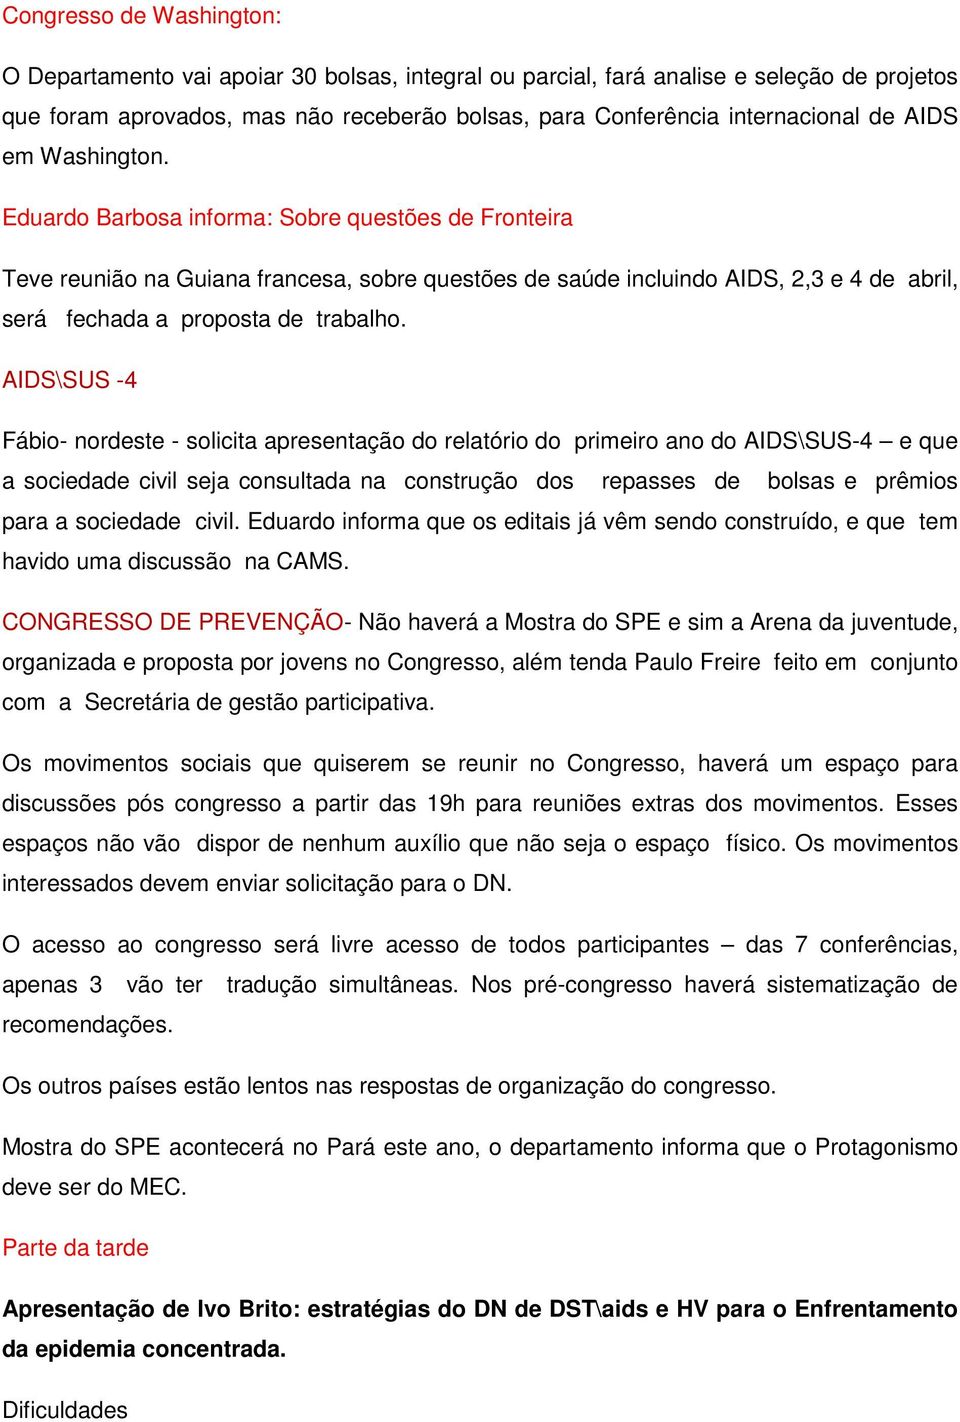 AIDS\SUS -4 Fábio- nordeste - solicita apresentação do relatório do primeiro ano do AIDS\SUS-4 e que a sociedade civil seja consultada na construção dos repasses de bolsas e prêmios para a sociedade